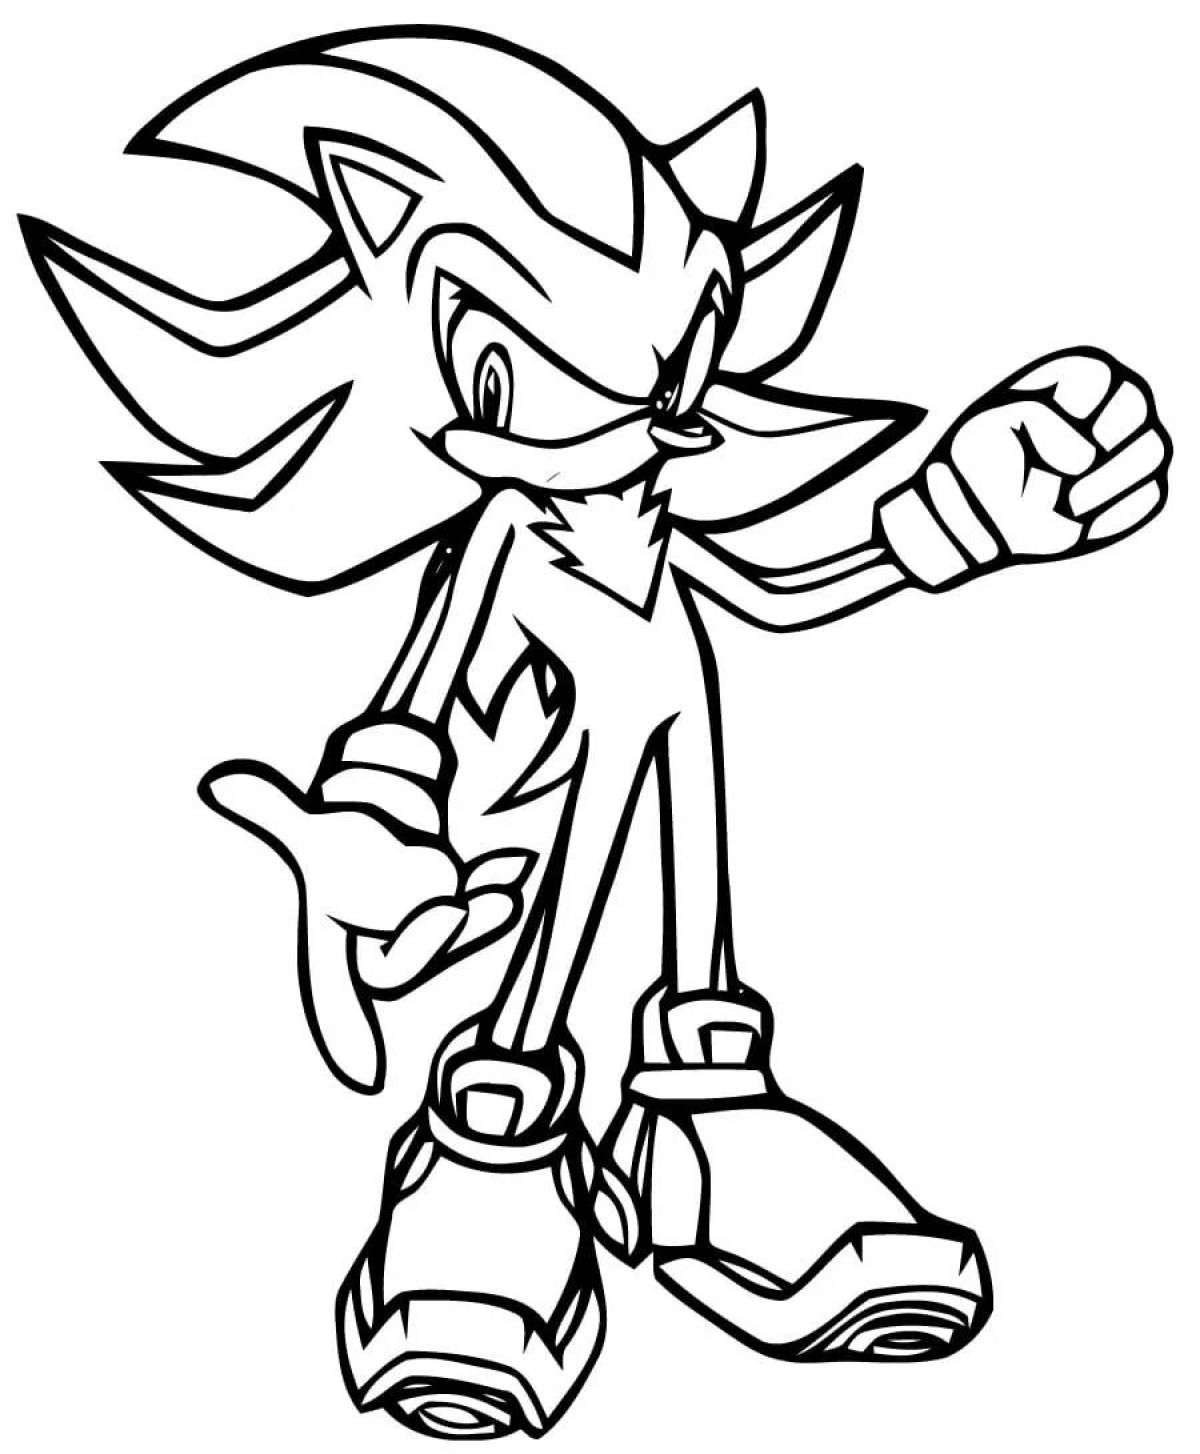 Sonic shredder #3